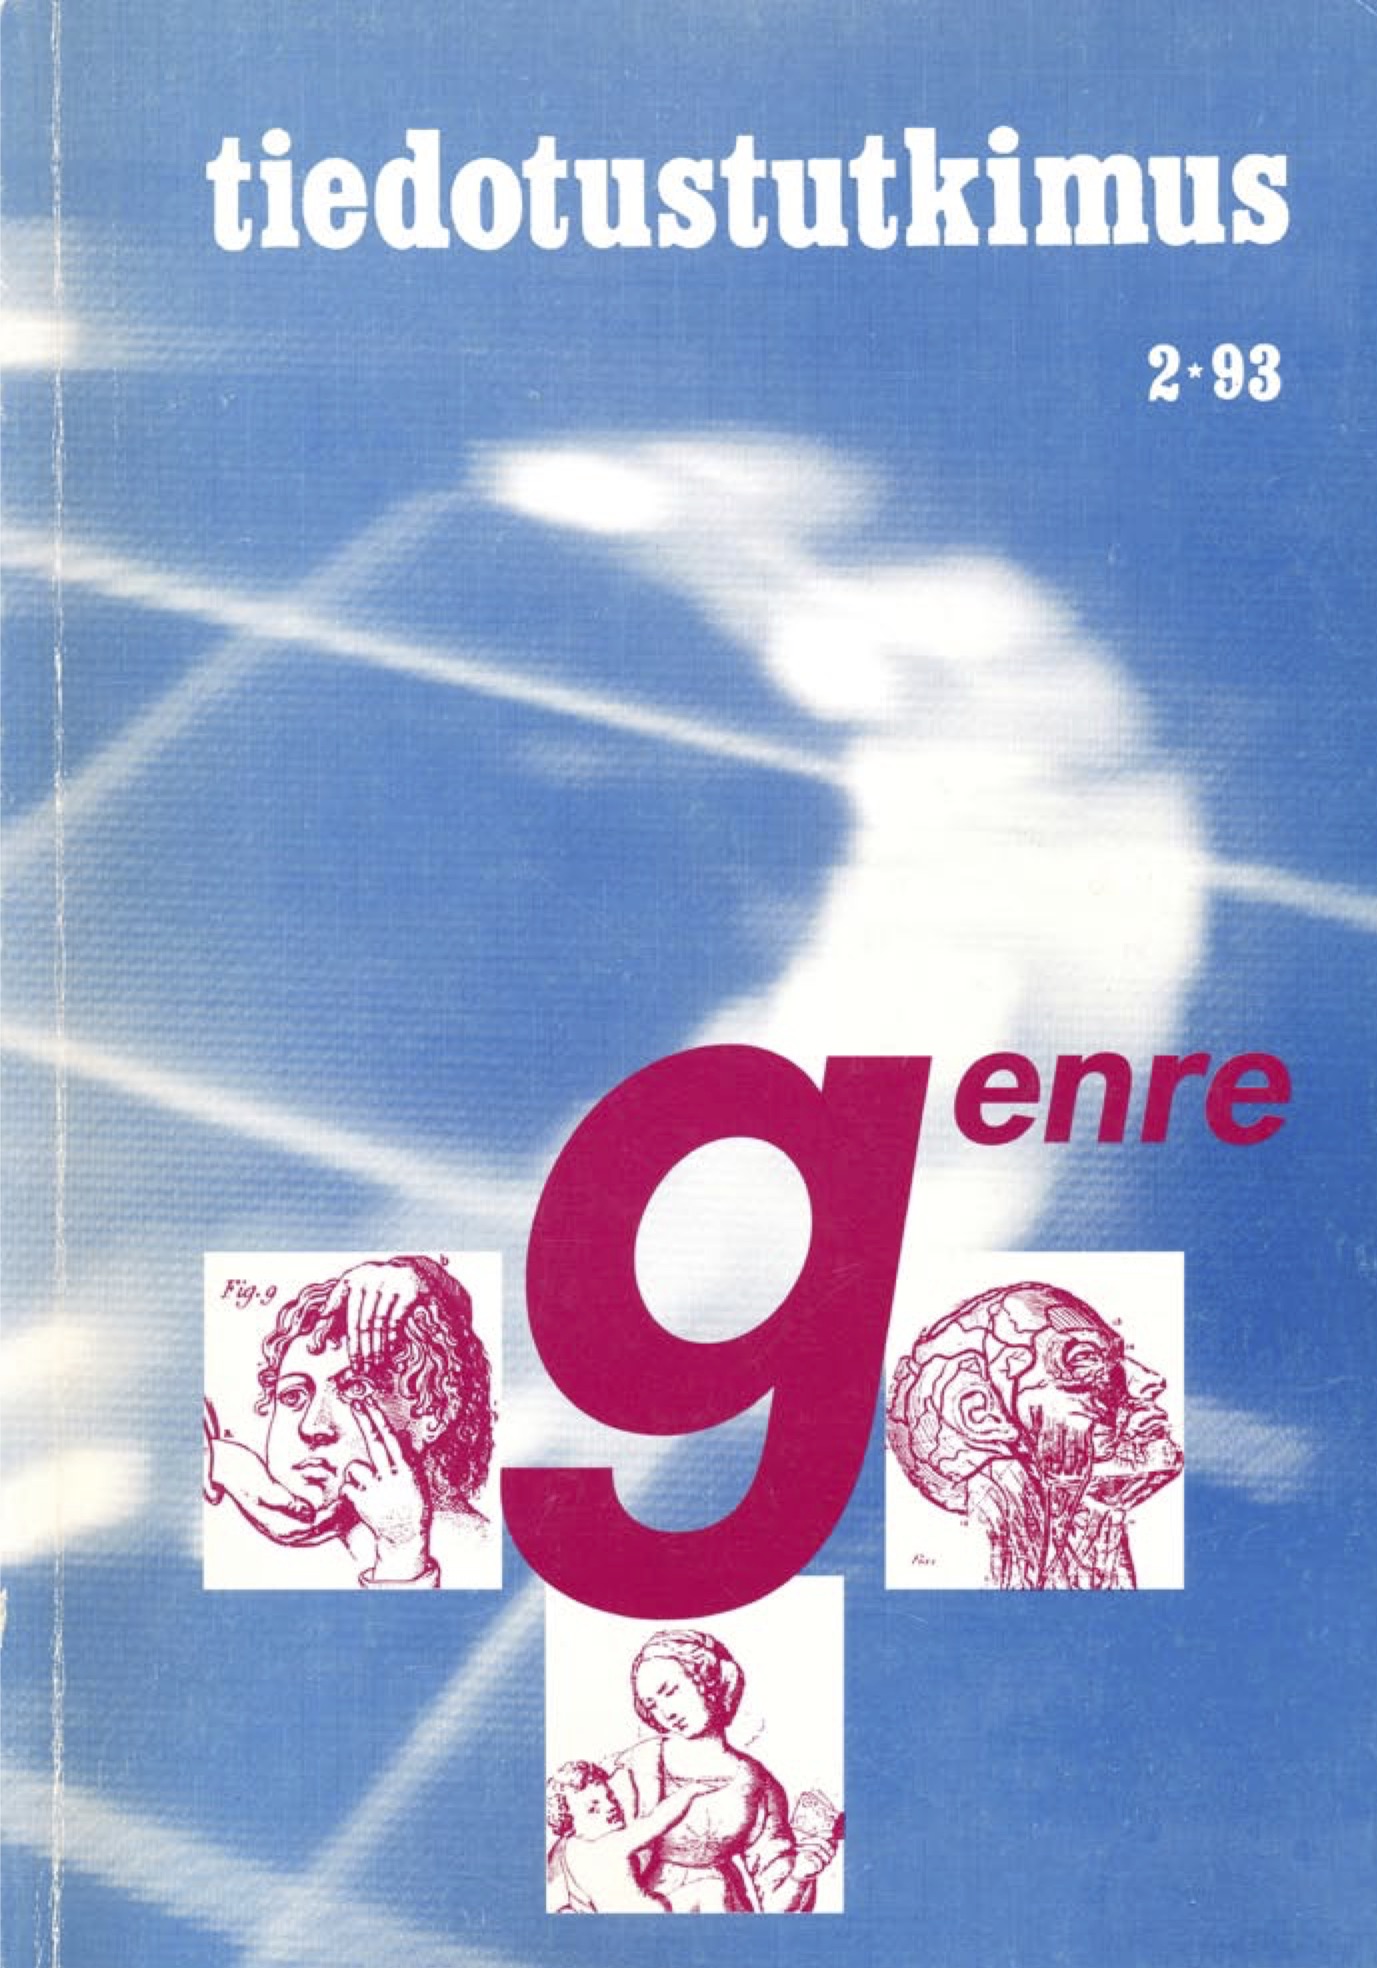 					Näytä Vol 16 Nro 2 (1993)
				